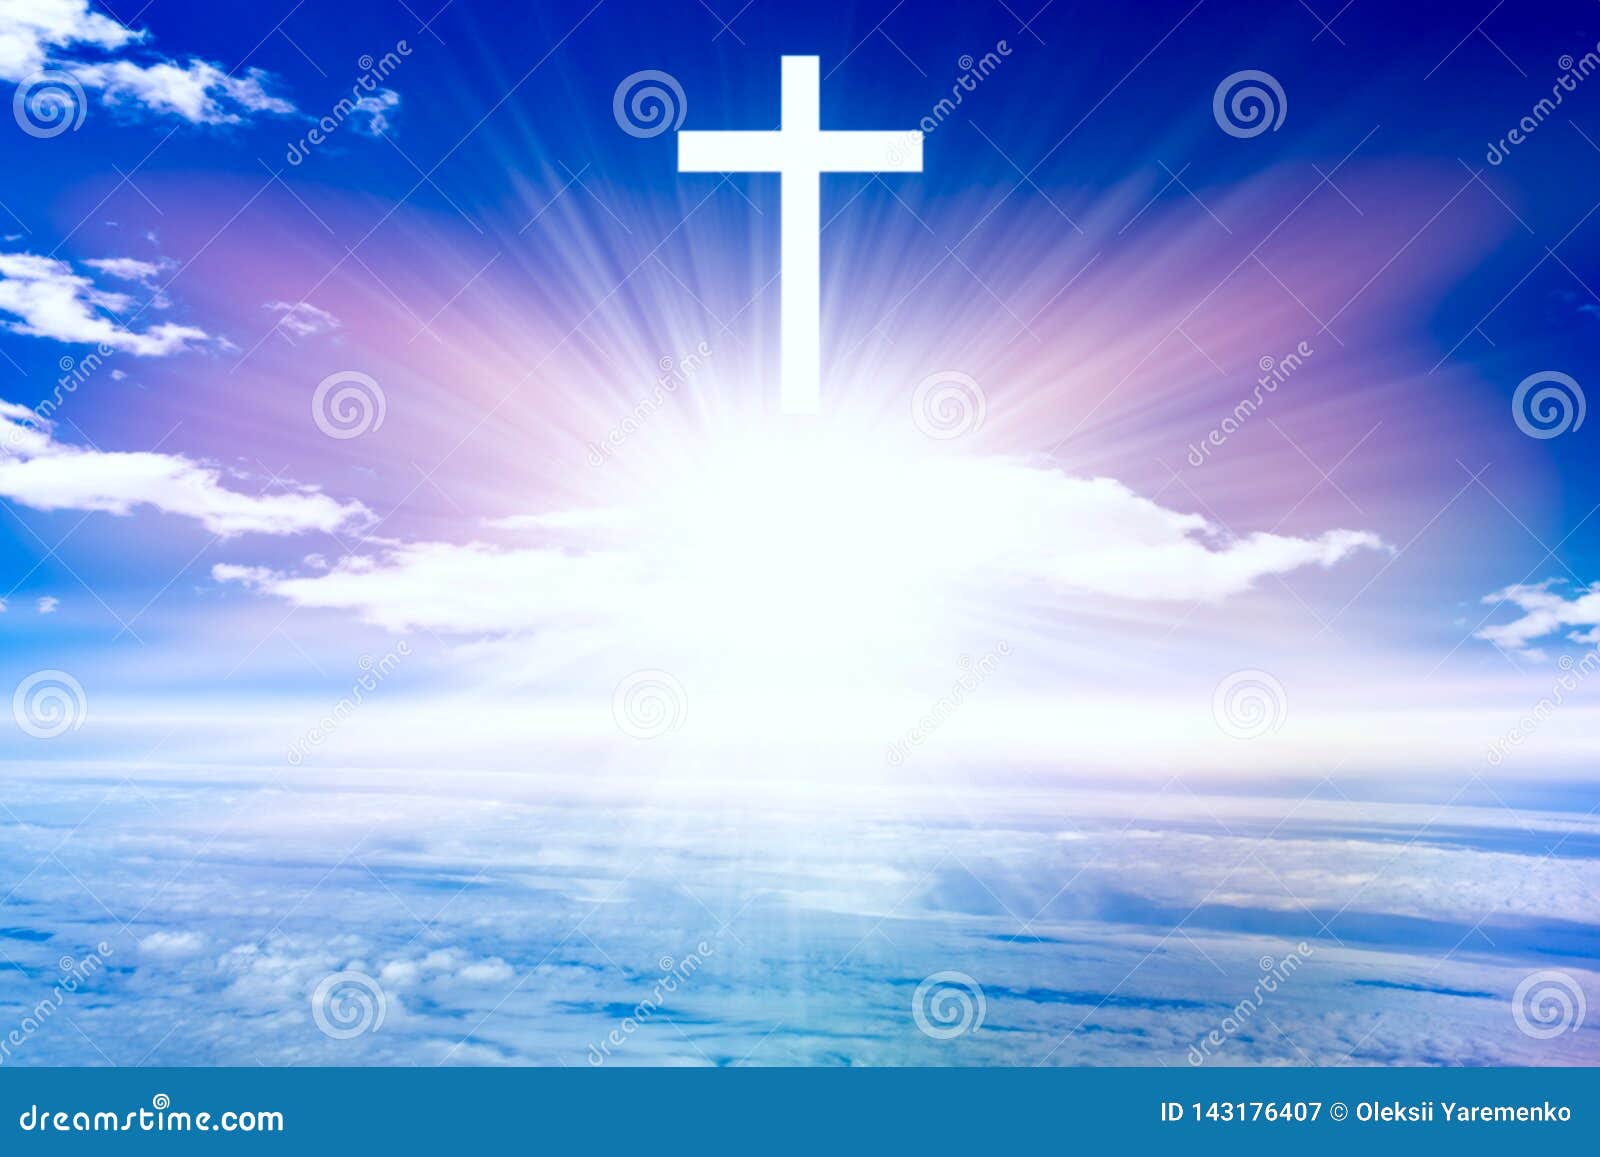 Religion Background . Paradise Heaven . Light in Sky – hình nền tôn giáo, thiên đường địa cực với ánh sáng trên bầu trời. \